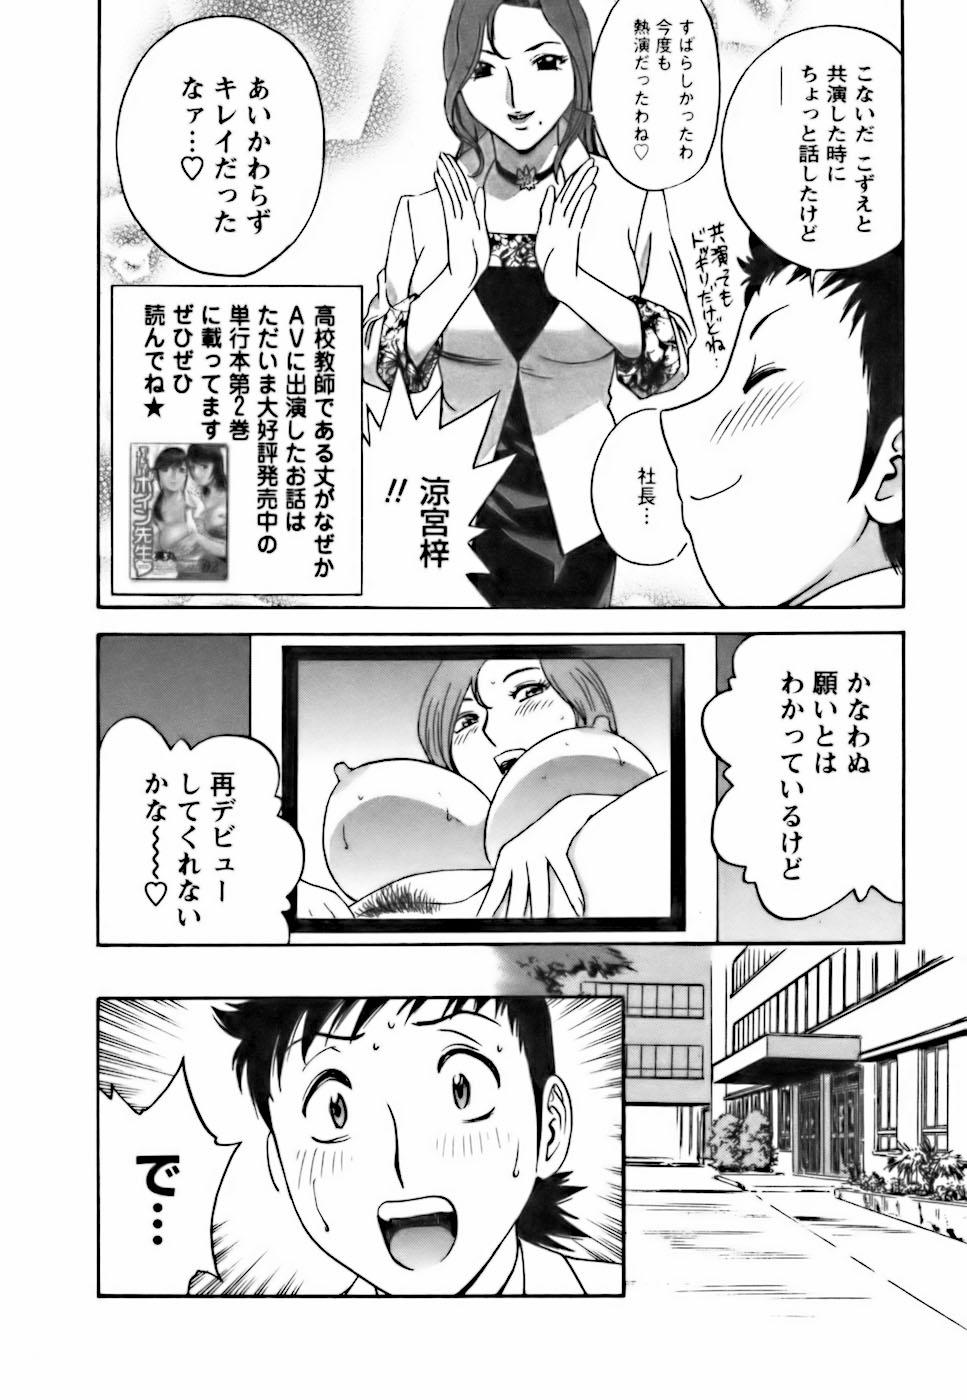 [Hidemaru] Mo-Retsu! Boin Sensei (Boing Boing Teacher) Vol.3 32